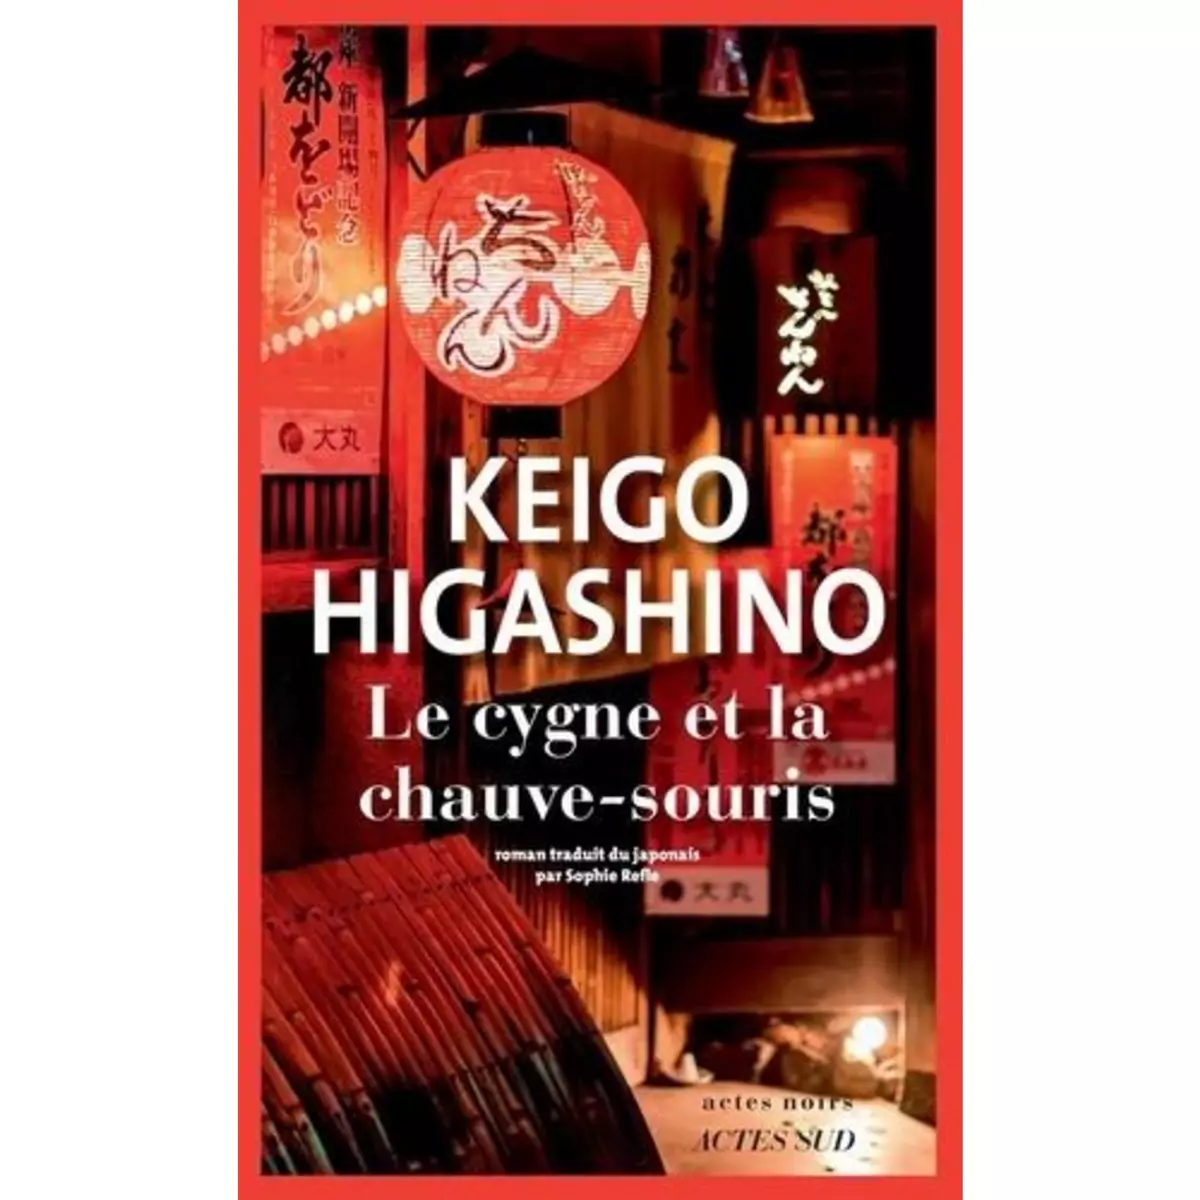  LE CYGNE ET LA CHAUVE-SOURIS, Higashino Keigo